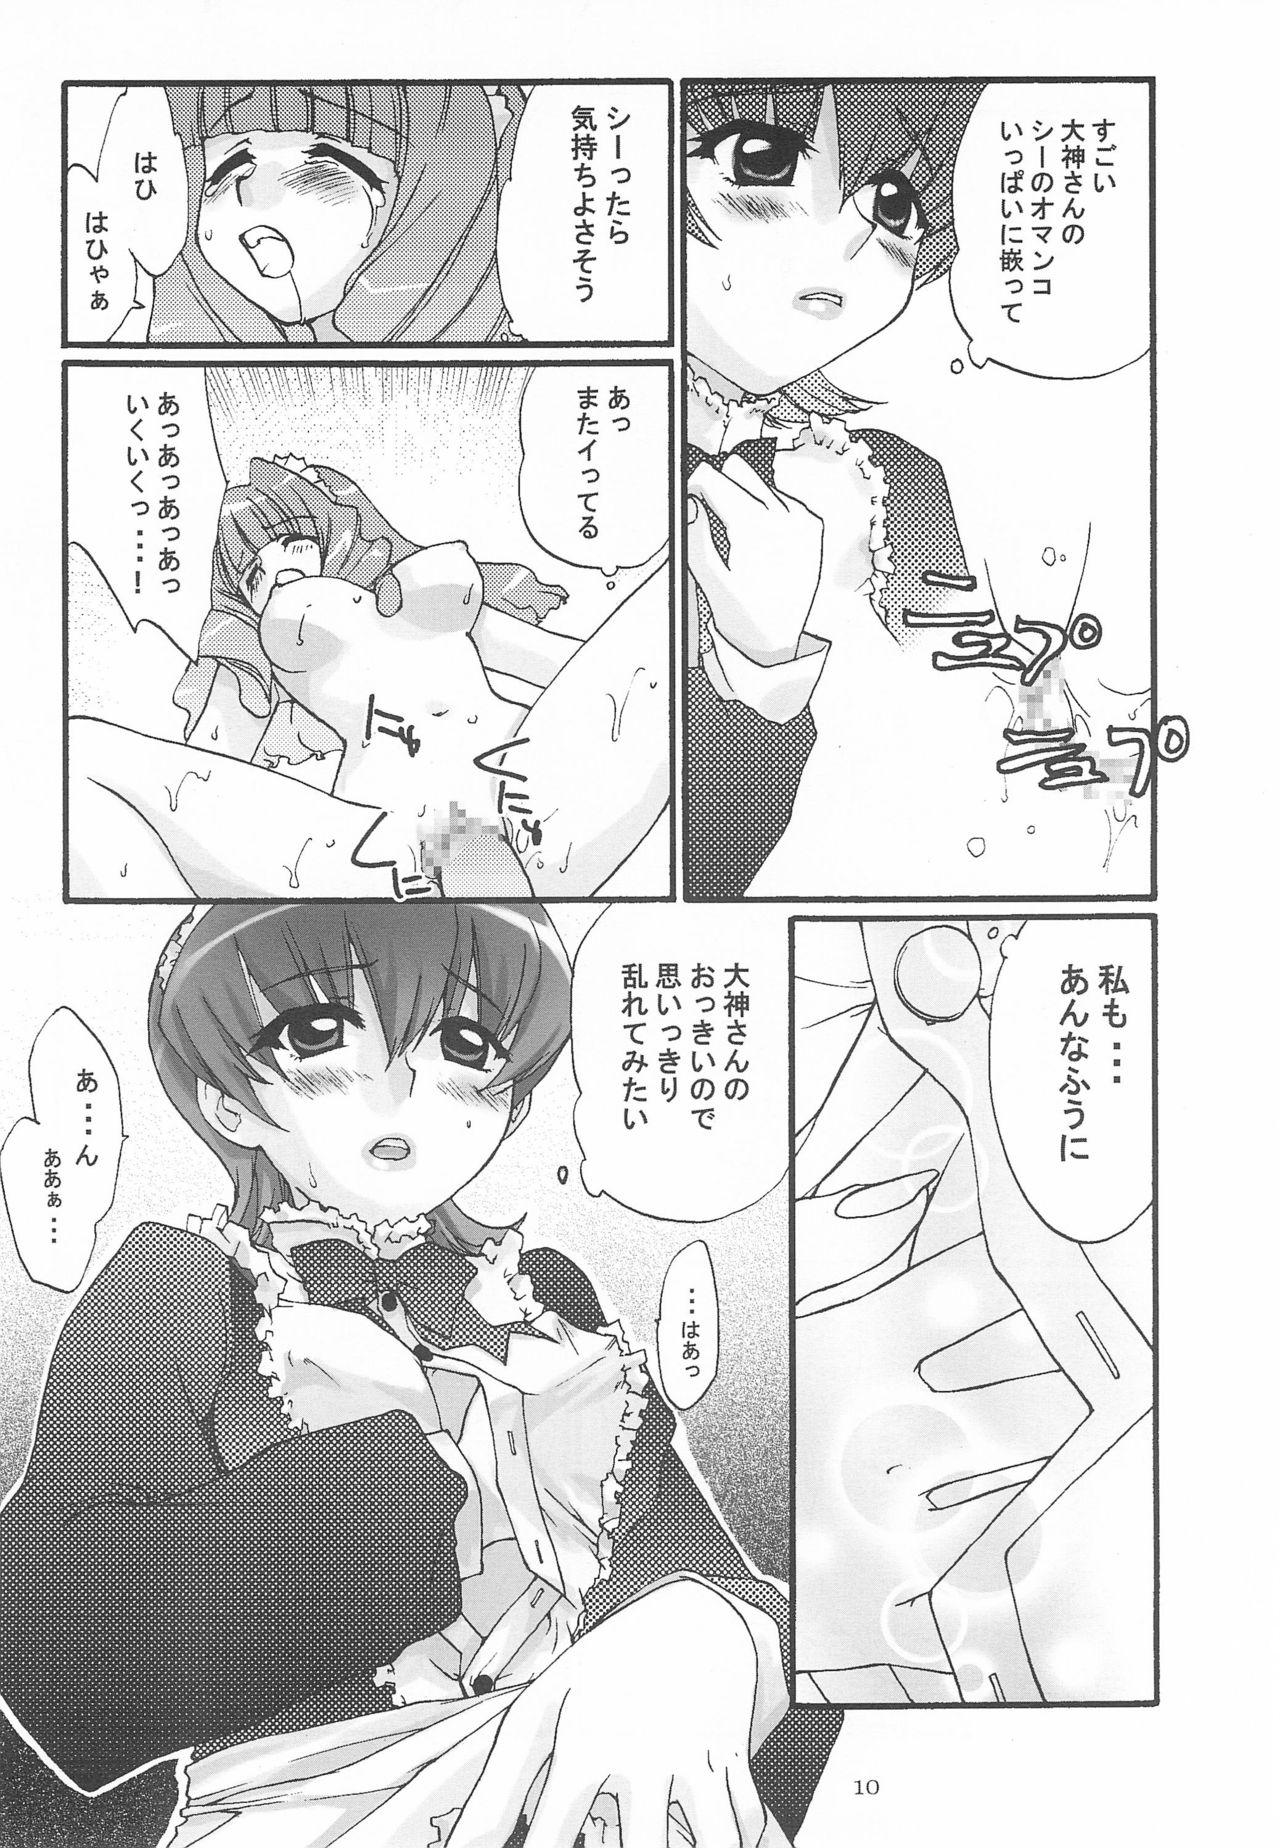 Gaydudes Alleluia - Sakura taisen | sakura wars Mallu - Page 12